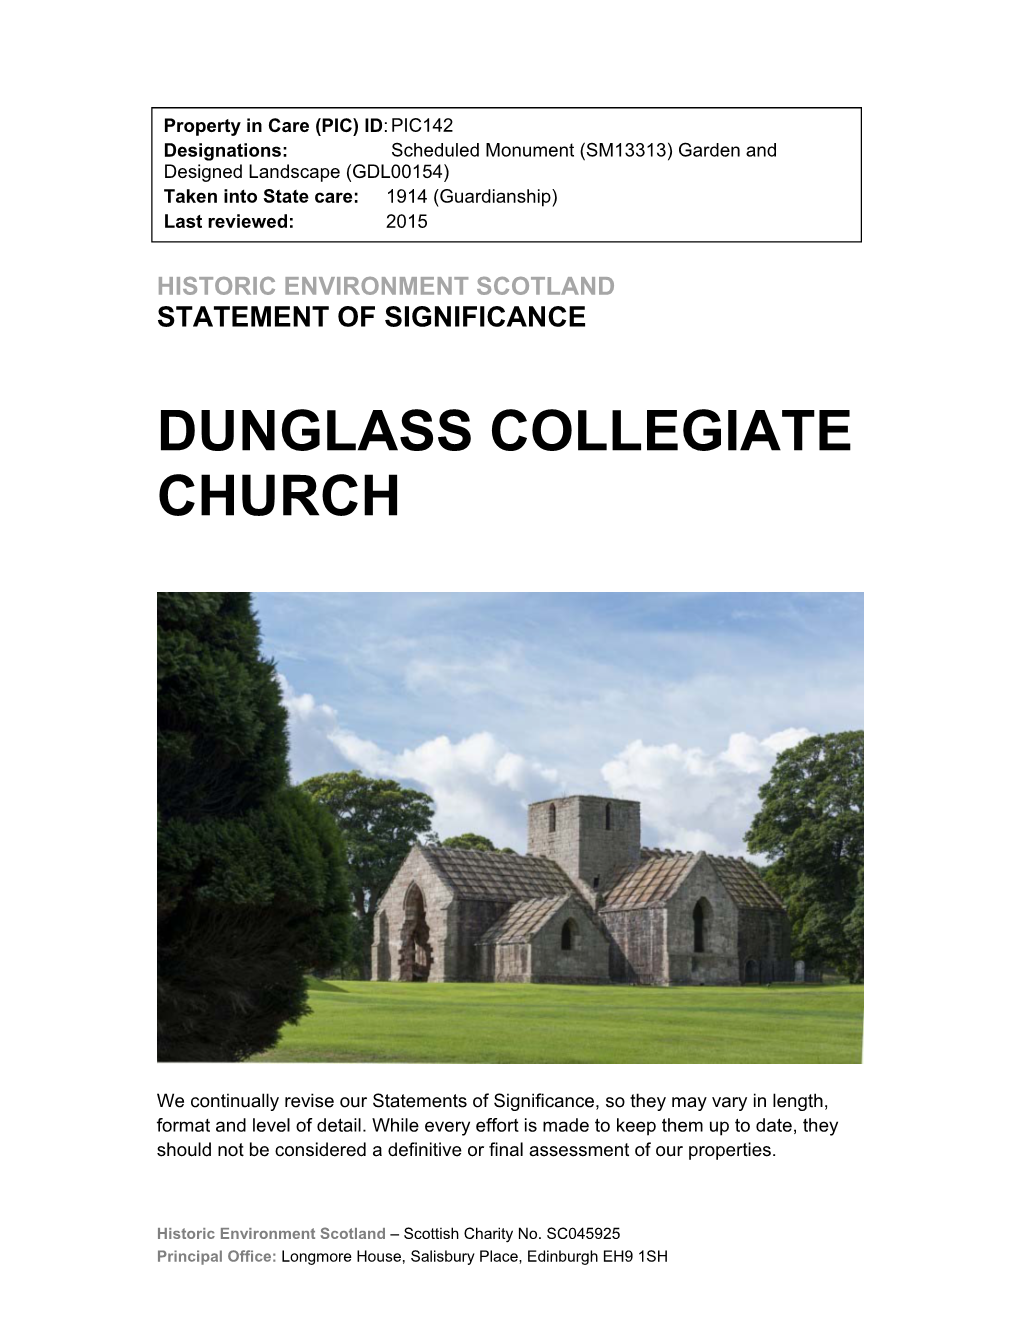 Dunglass Collegiate Church